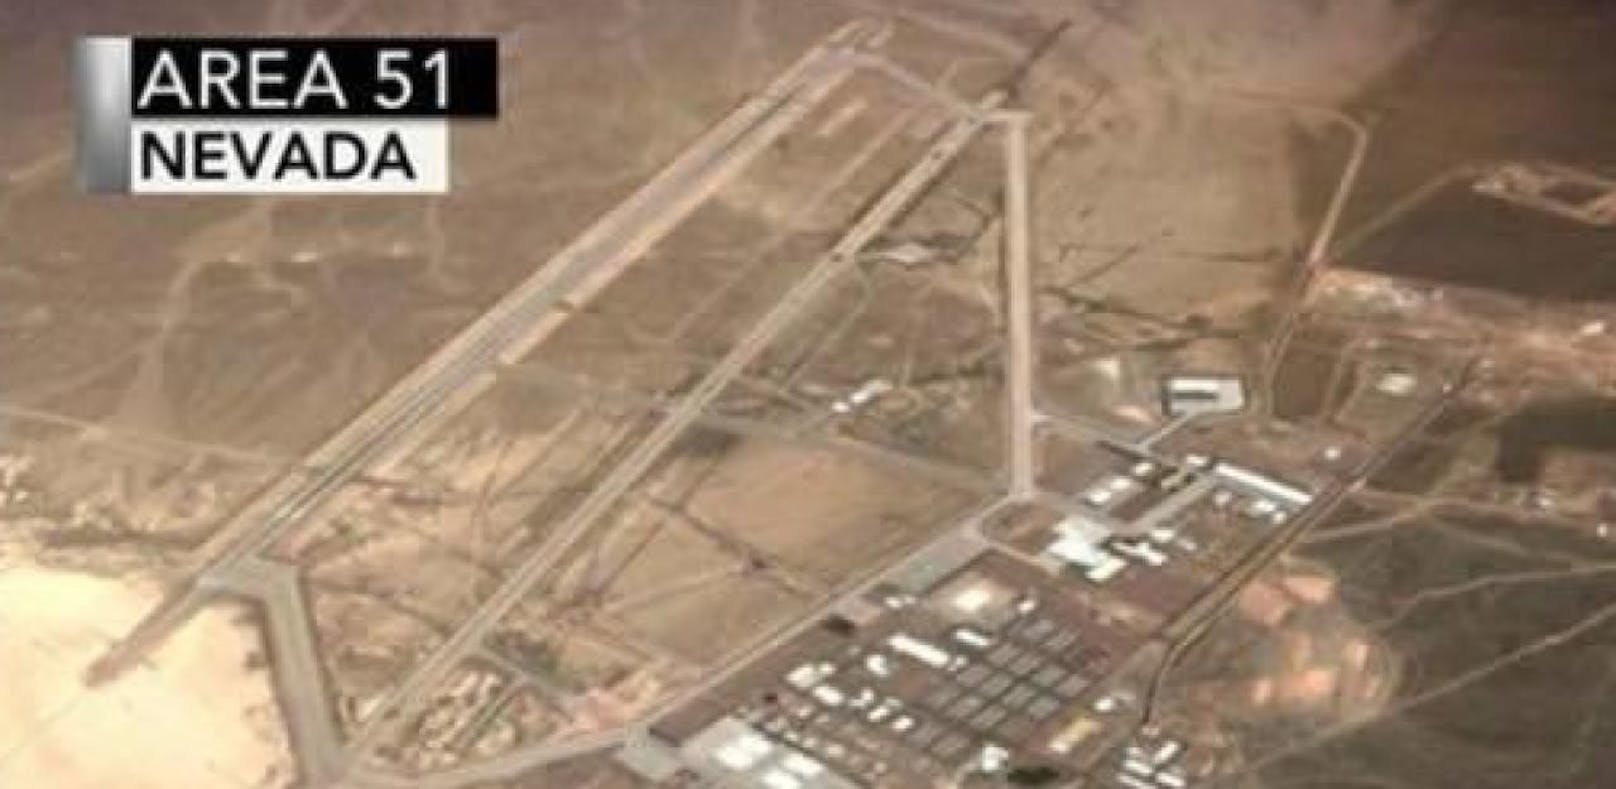 Aliens? Hunderttausende wollen Area 51 stürmen